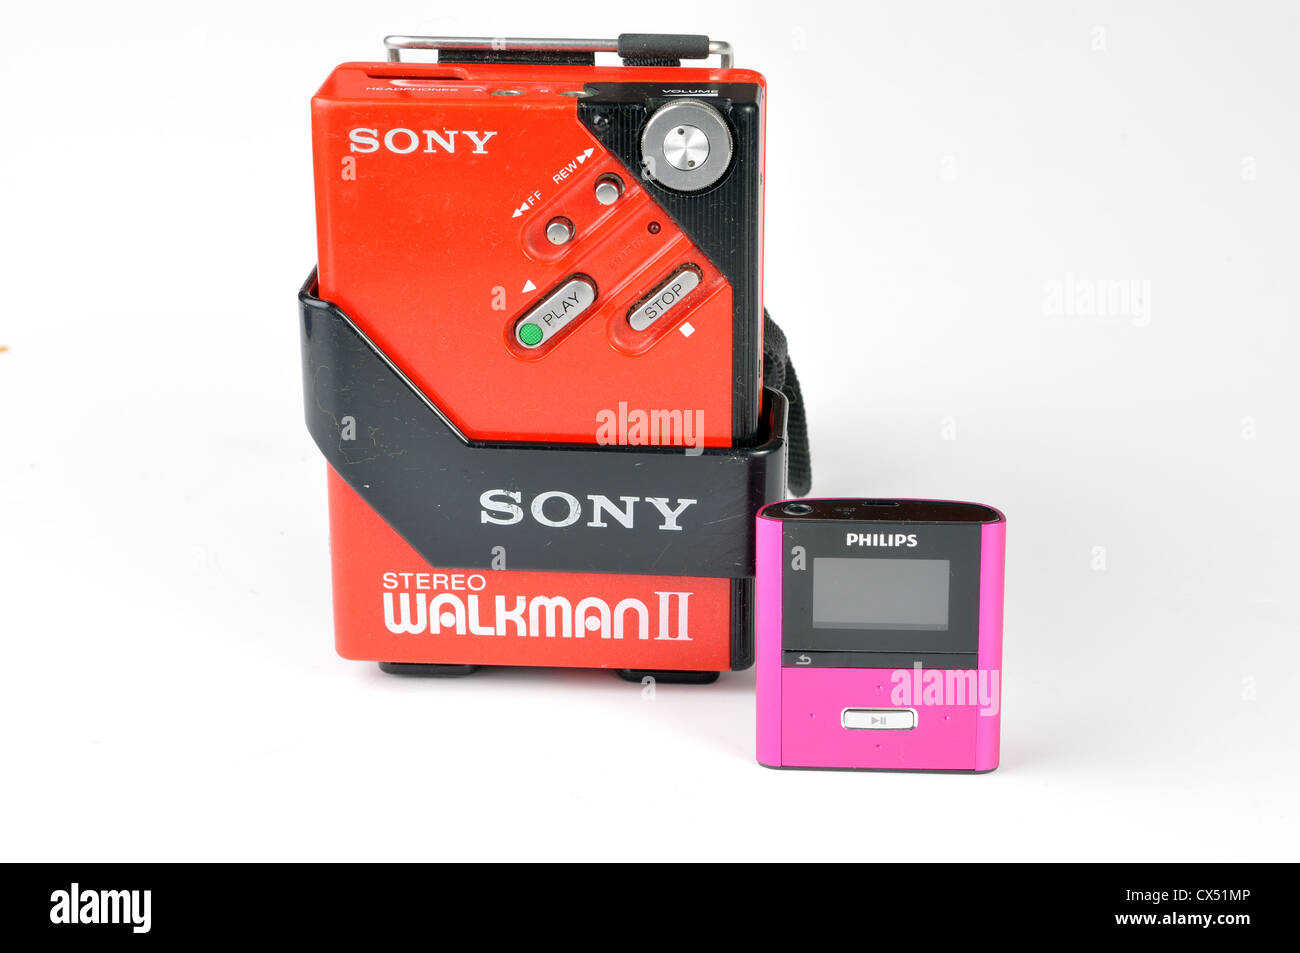 Reproductor multimedia Walkman® NW-A100 serie A con MP3 y audio de